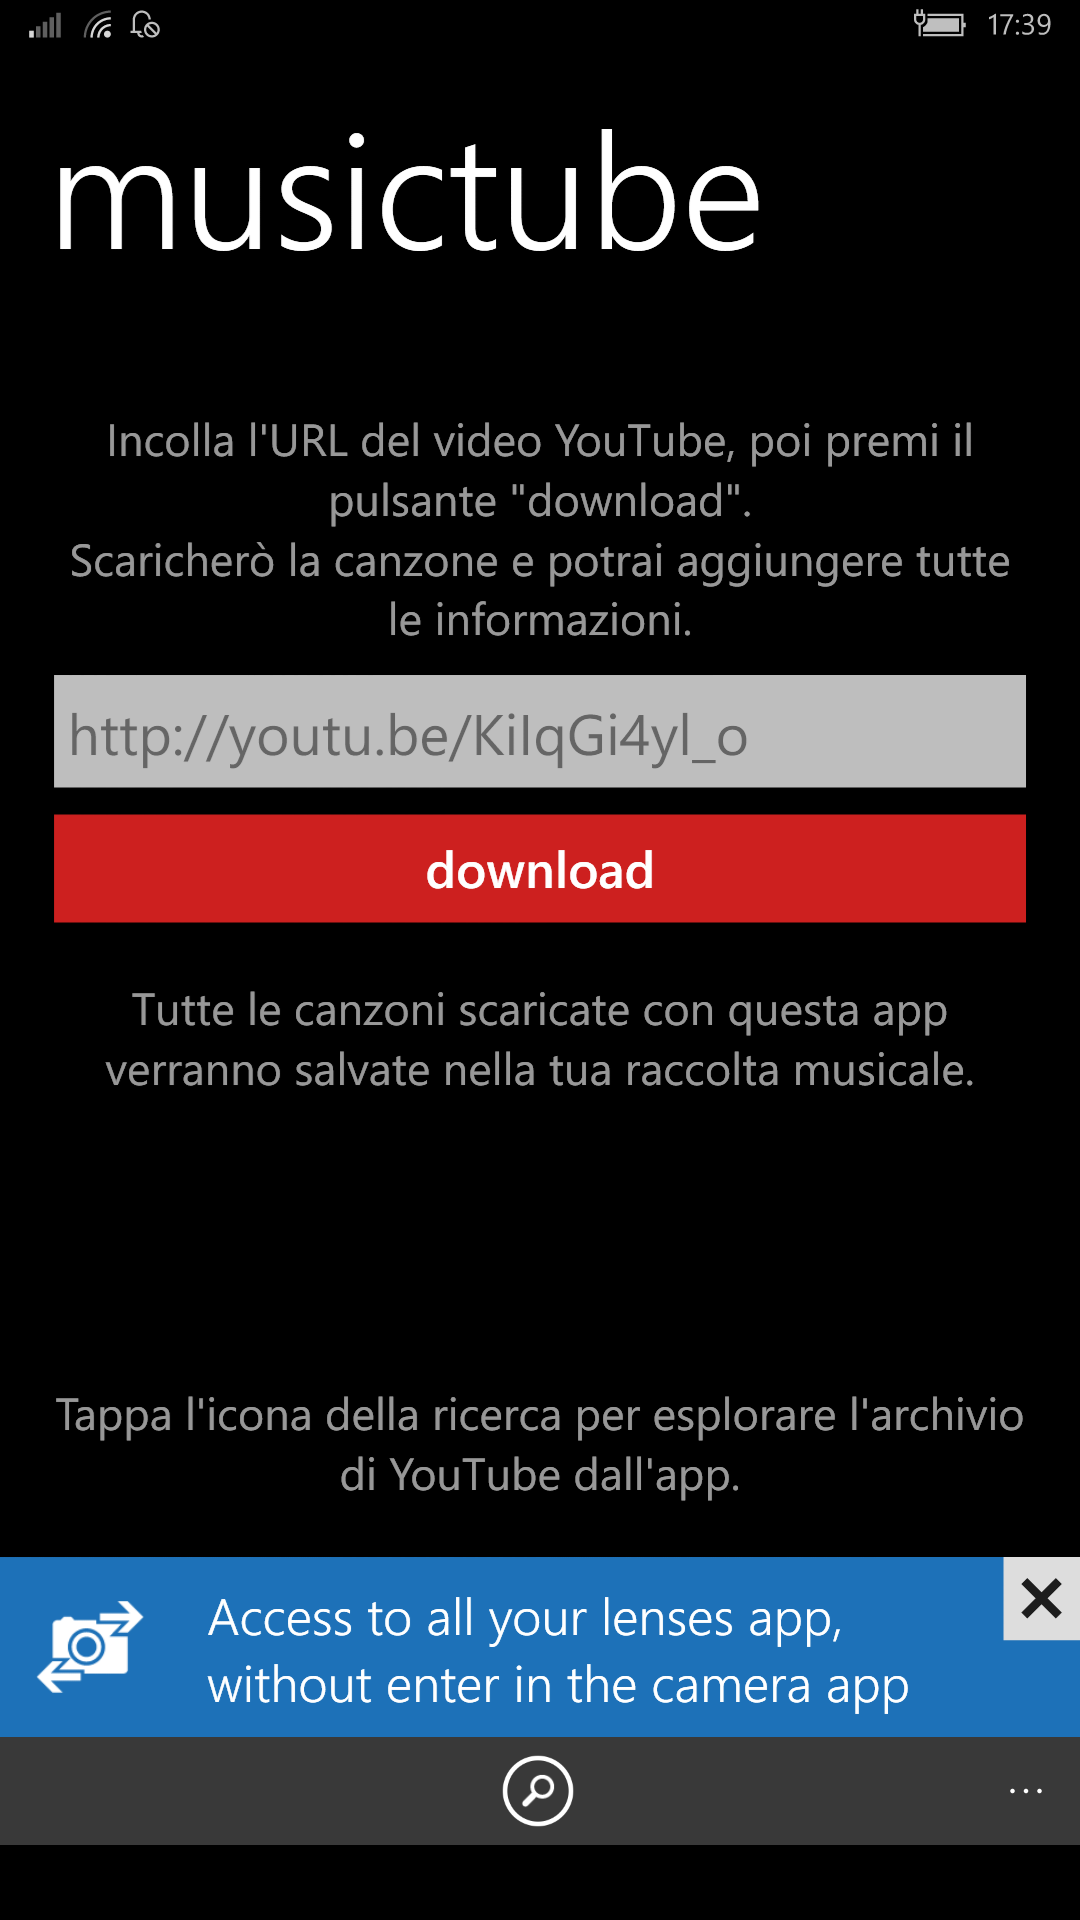 youtube music app for windows 10